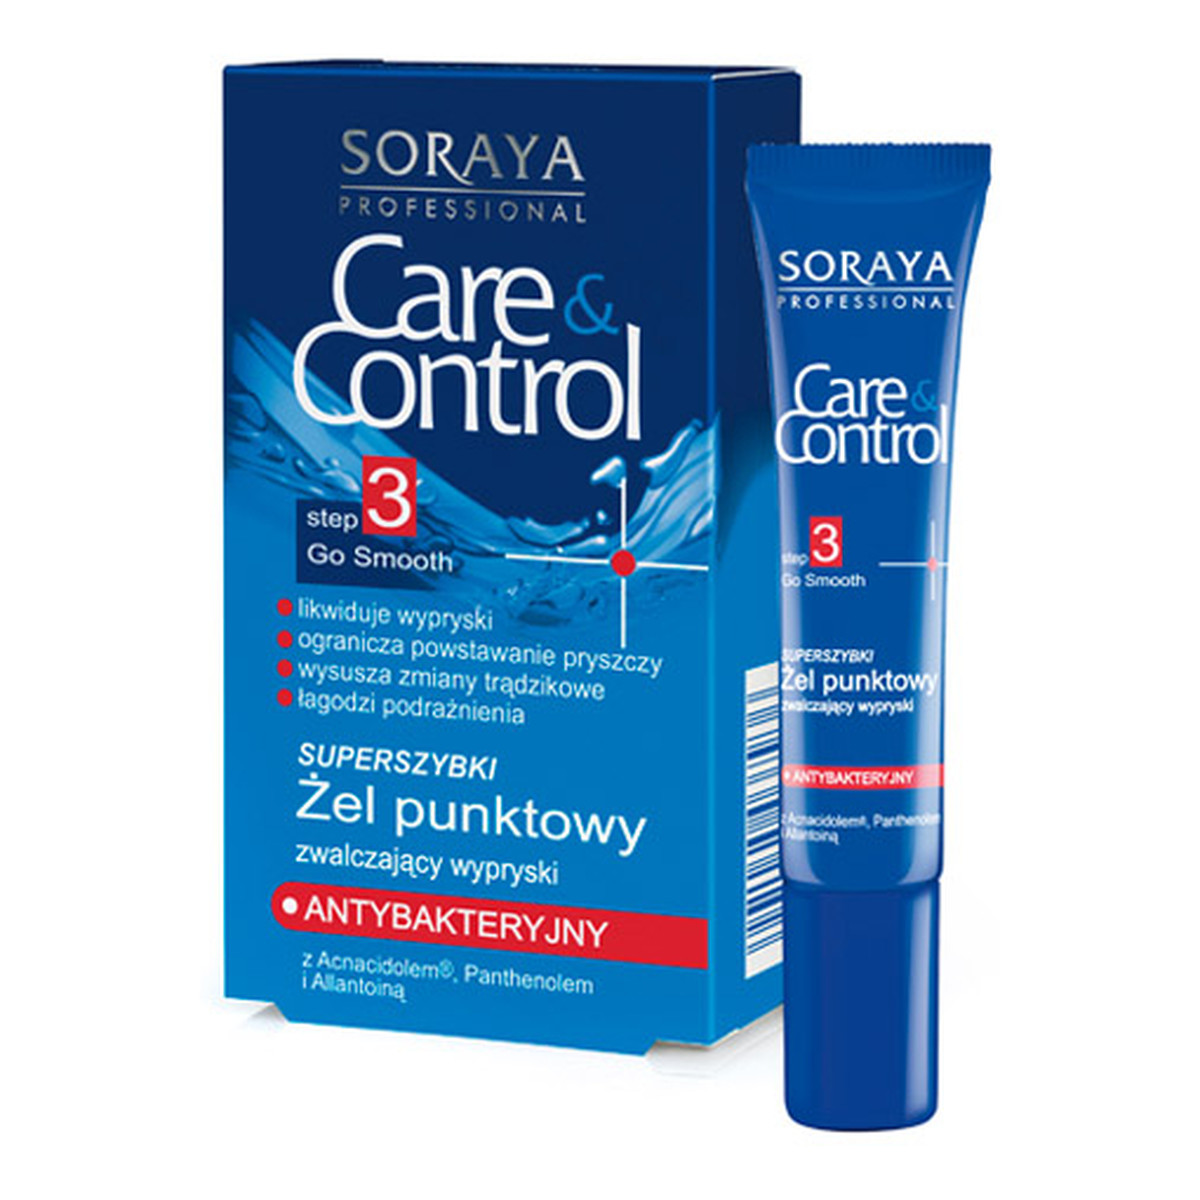 Soraya Care & Control Superszybki Żel Punktowy Zwalczający Wypryski 10ml